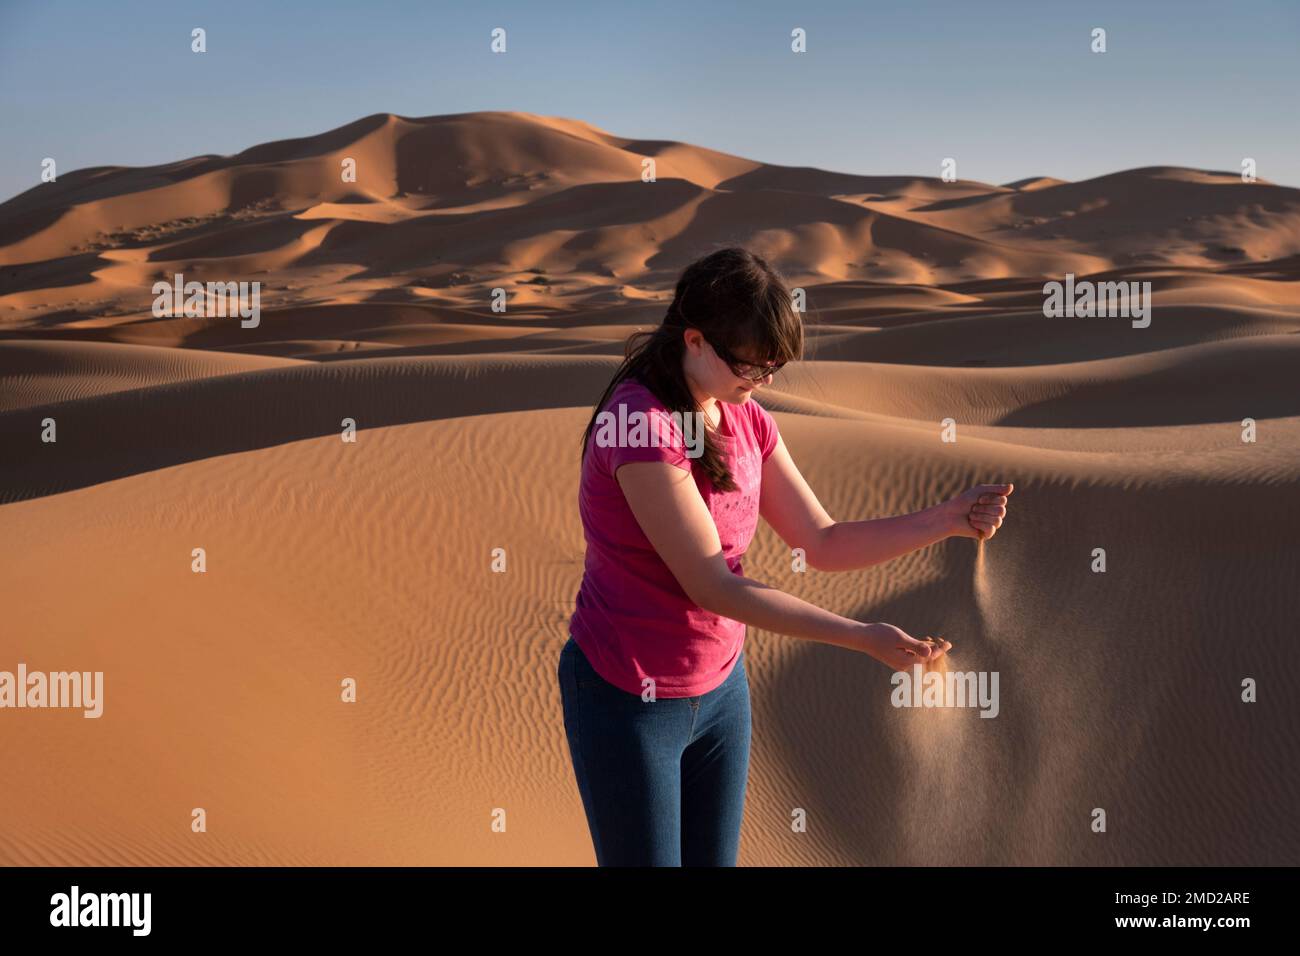 Adolescente jugando en las dunas de arena de Erg Chebbi, desierto del Sahara, Marruecos, África del Norte Foto de stock